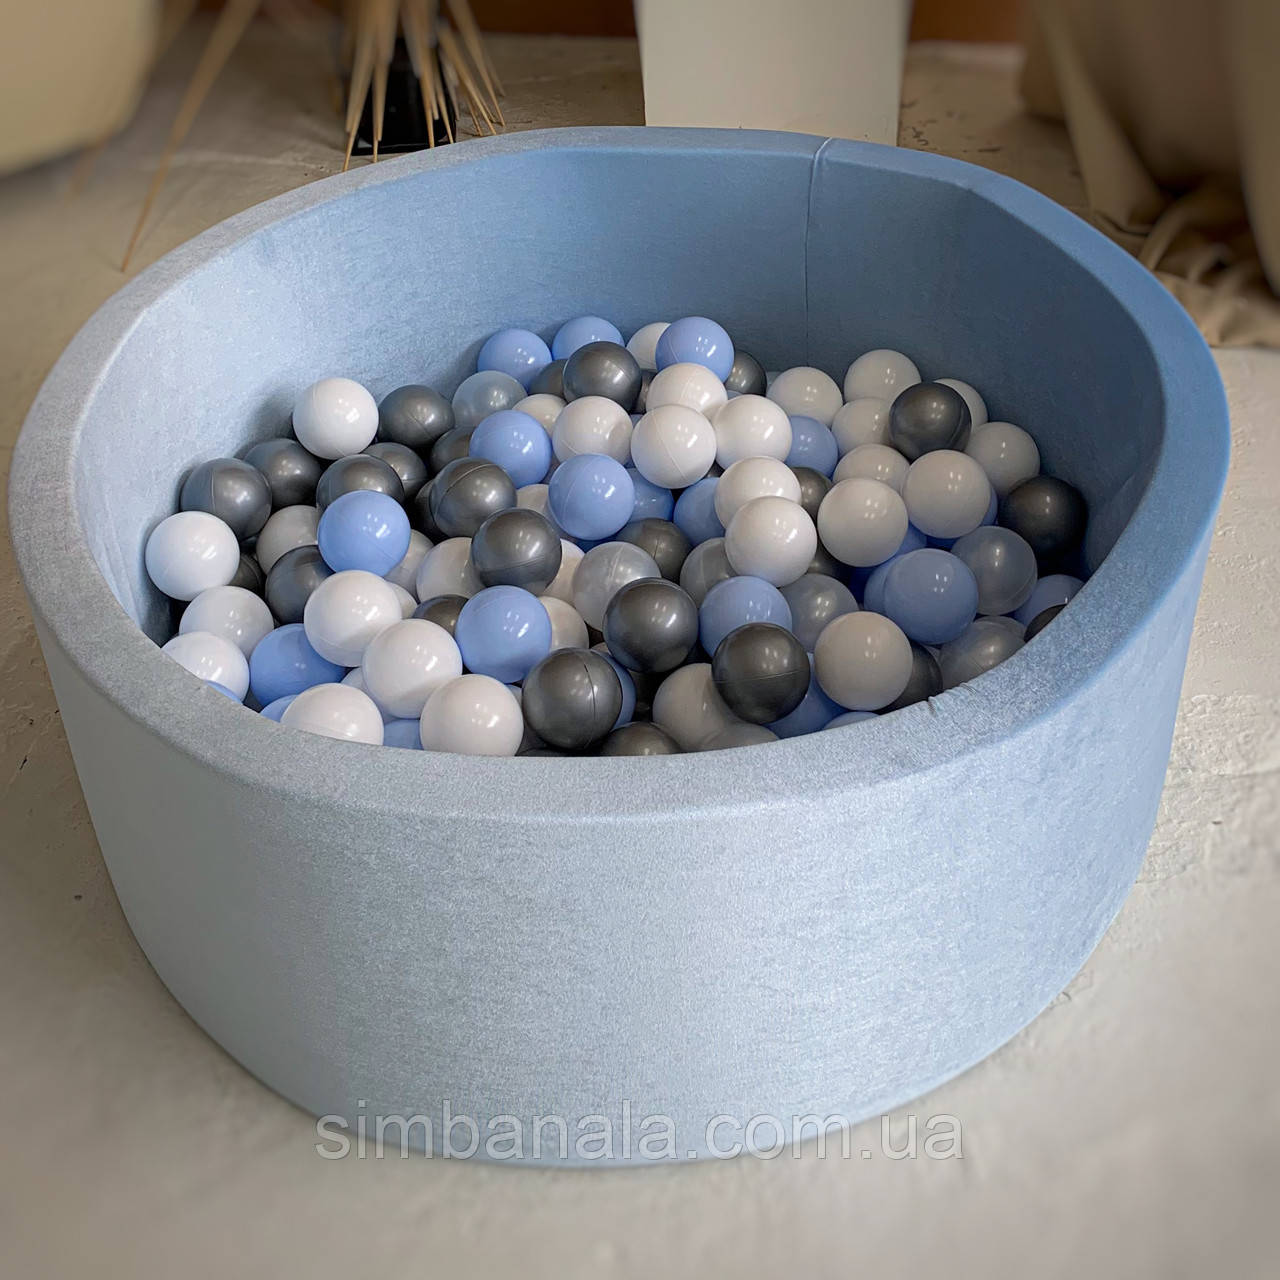 Дитячий сухий басейн Zatyshno, тканина - натуральний оксамит, з набором кульок, колір блакитний